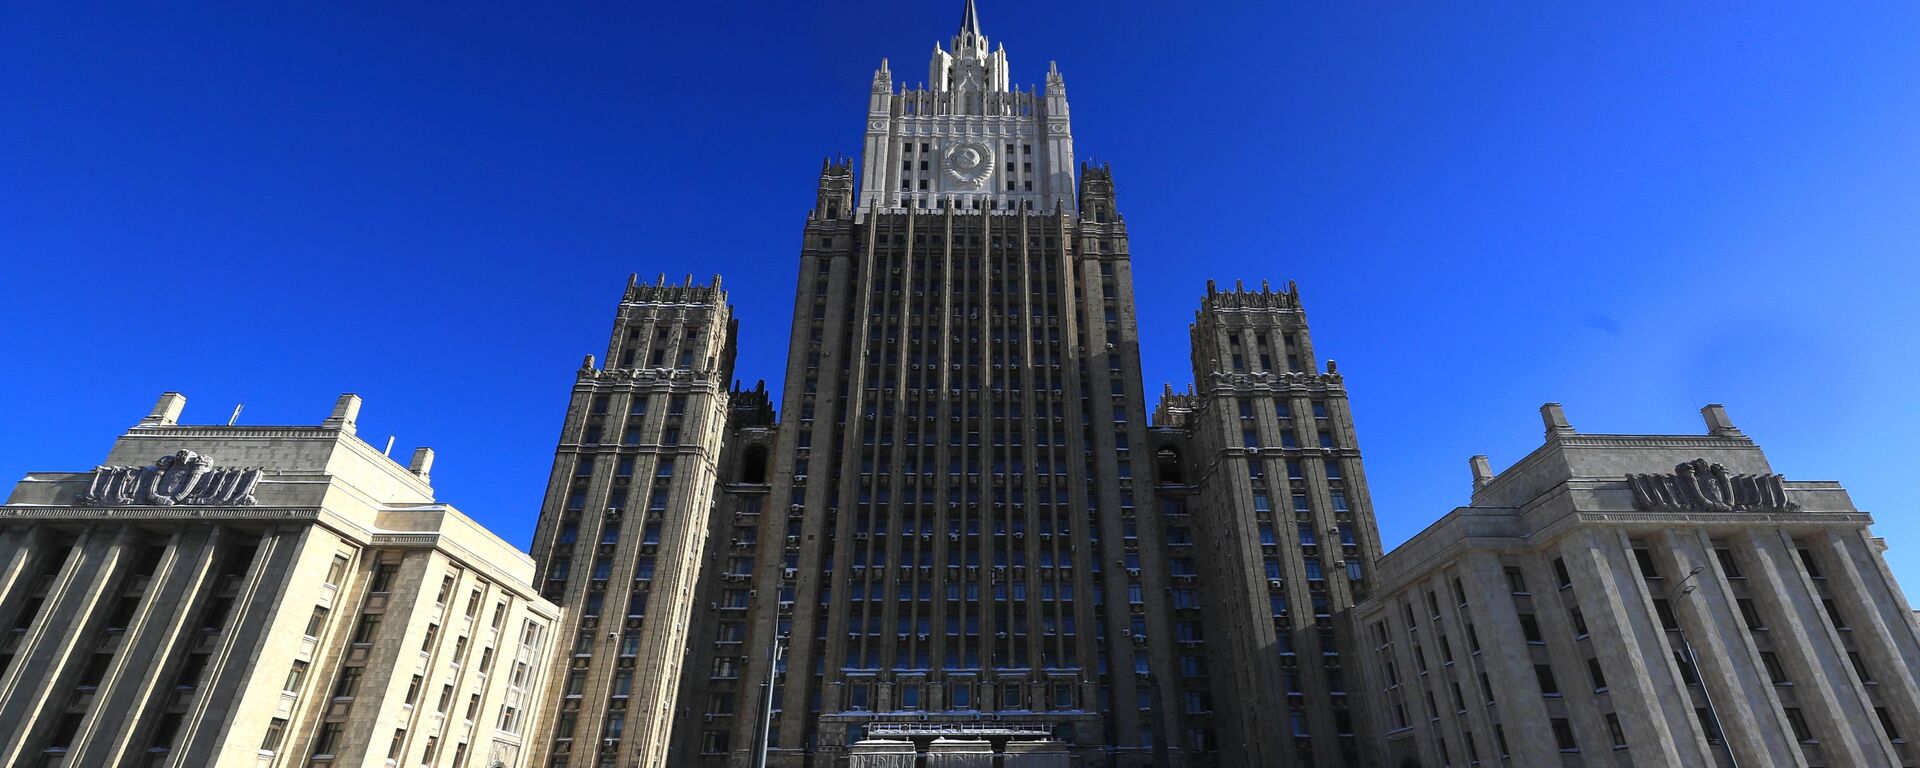 Здание Министерства иностранных дел РФ в Москве, архивное фото - Sputnik Латвия, 1920, 30.12.2021